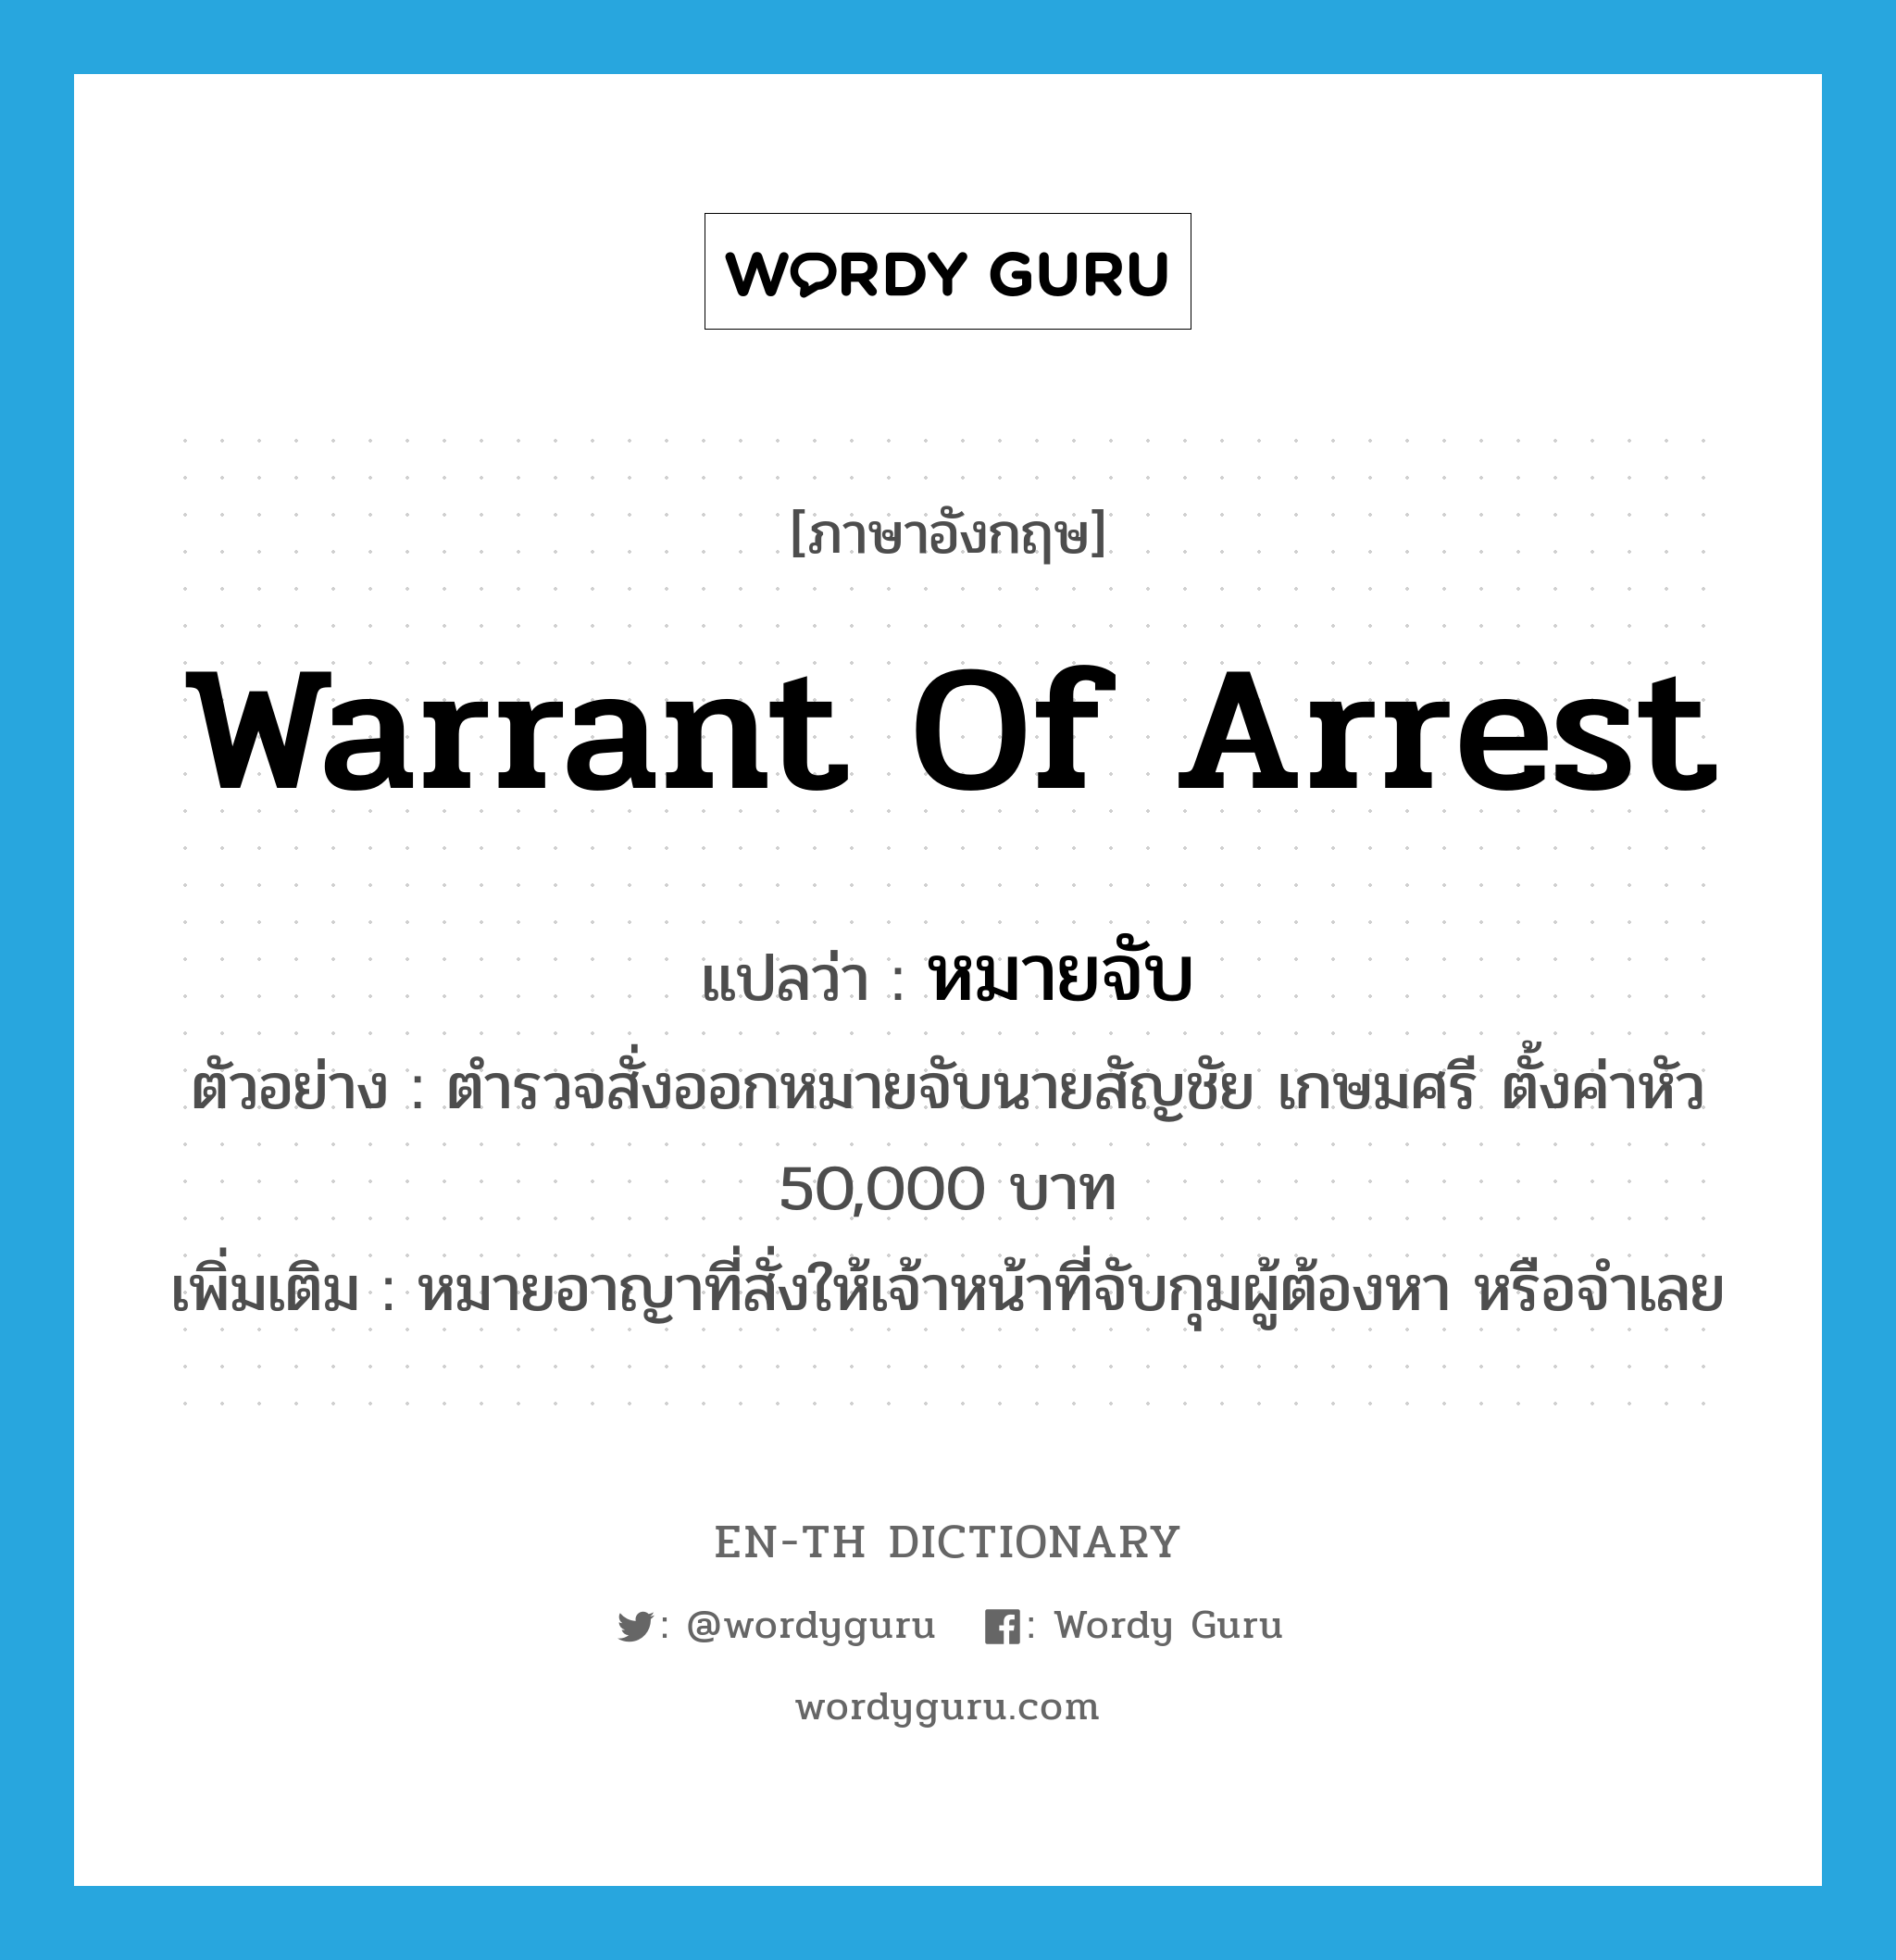 warrant of arrest แปลว่า?, คำศัพท์ภาษาอังกฤษ warrant of arrest แปลว่า หมายจับ ประเภท N ตัวอย่าง ตำรวจสั่งออกหมายจับนายสัญชัย เกษมศรี ตั้งค่าหัว 50,000 บาท เพิ่มเติม หมายอาญาที่สั่งให้เจ้าหน้าที่จับกุมผู้ต้องหา หรือจำเลย หมวด N